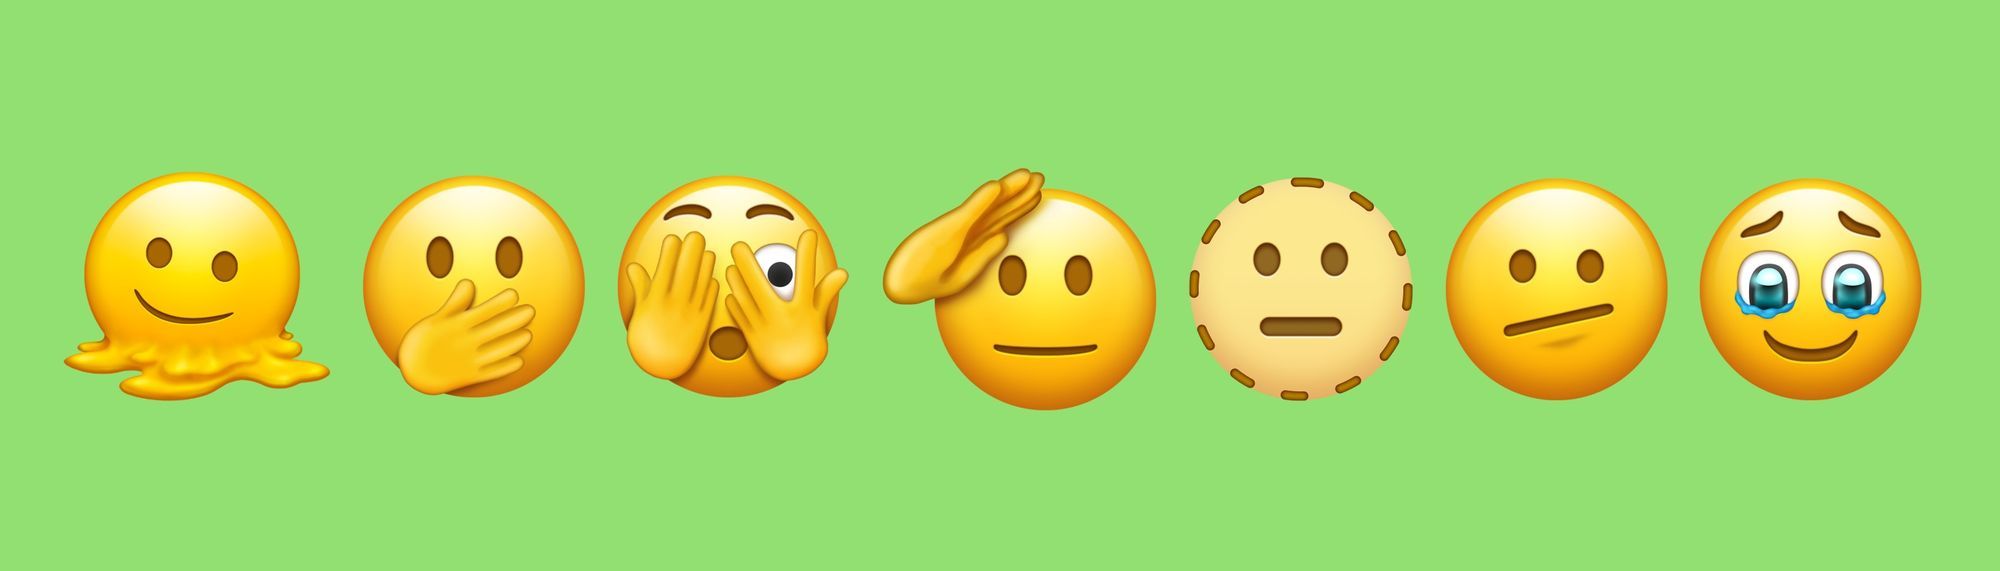 رموز تعبيرية emoji